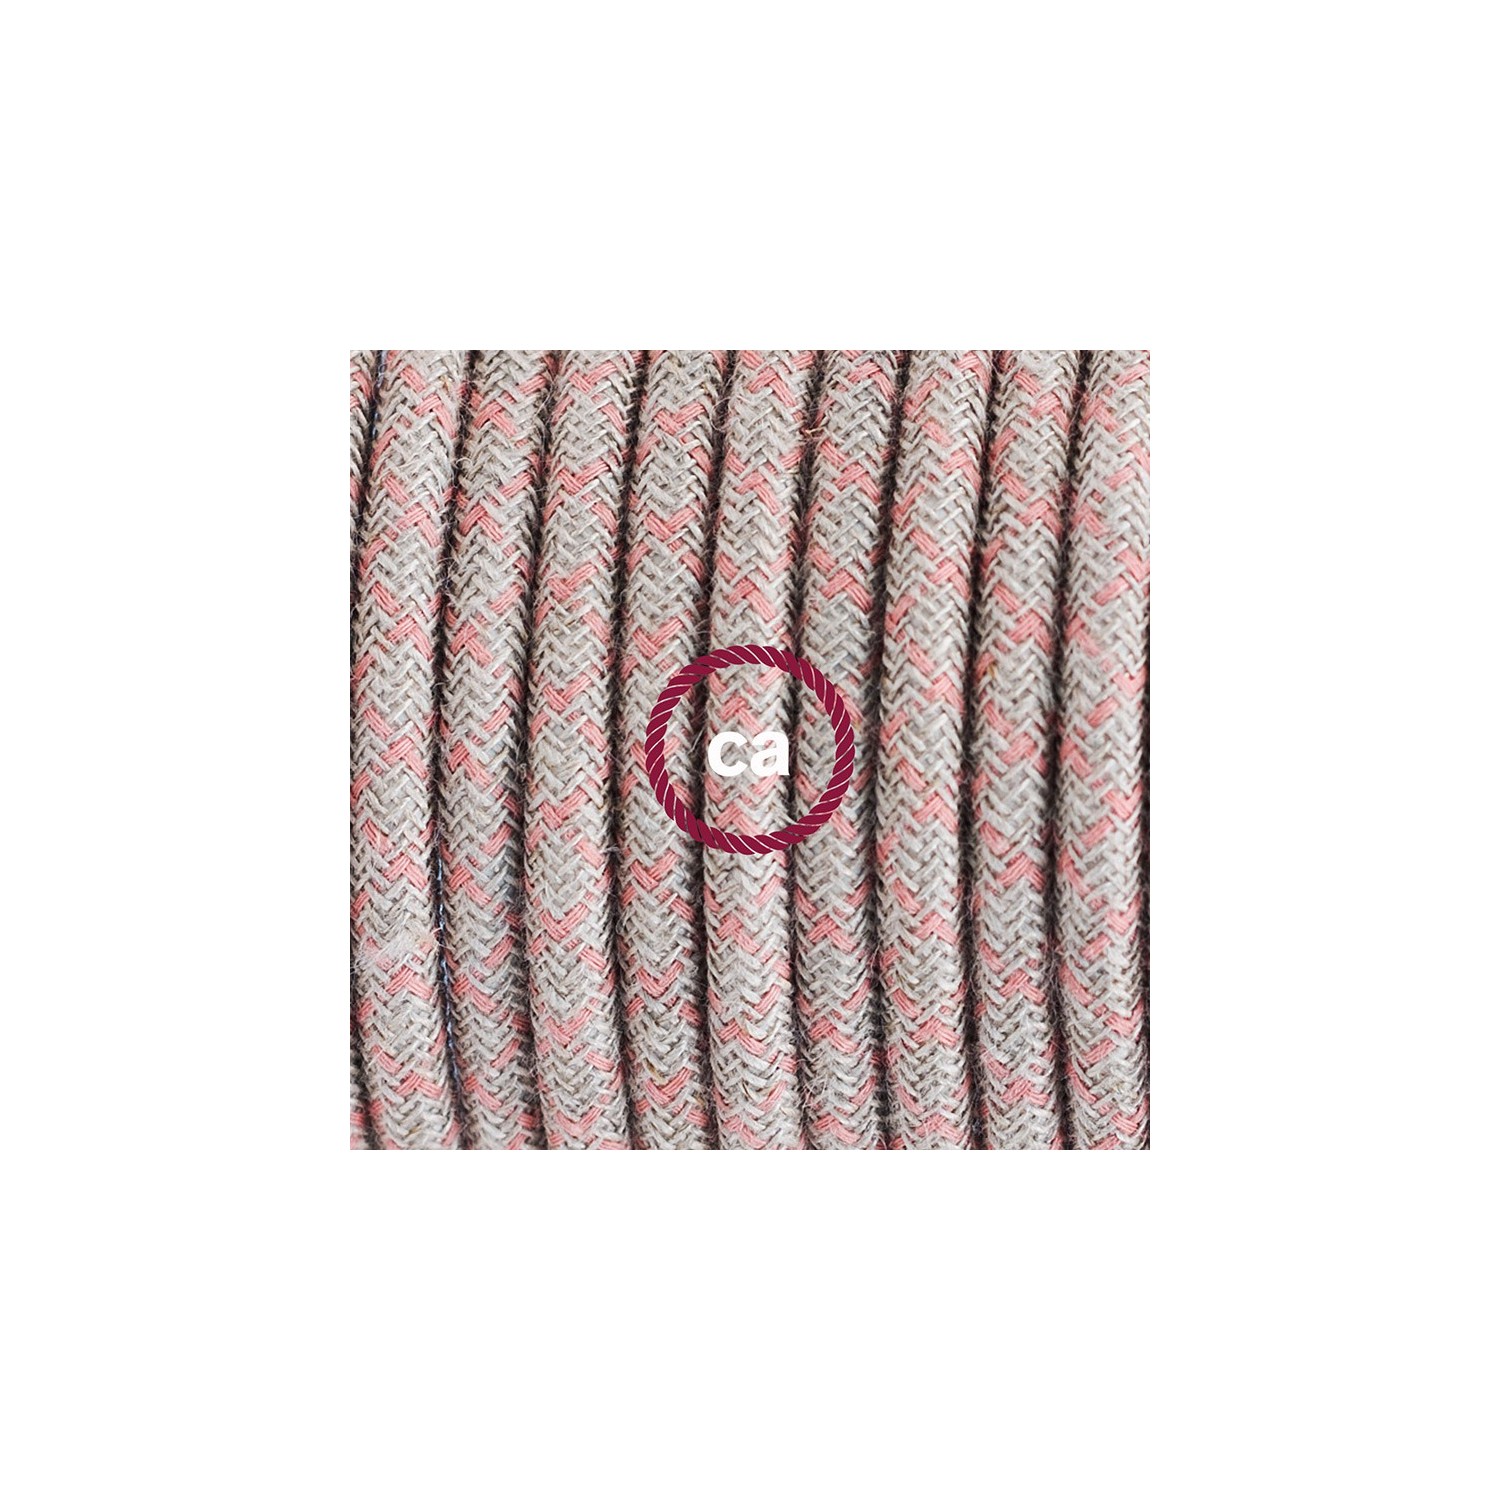 Ronde flexibele textielkabel van katoen en linnen met schakelaar en stekker. RD61 - lozenge "oud" pink en linnen 1,80 m.